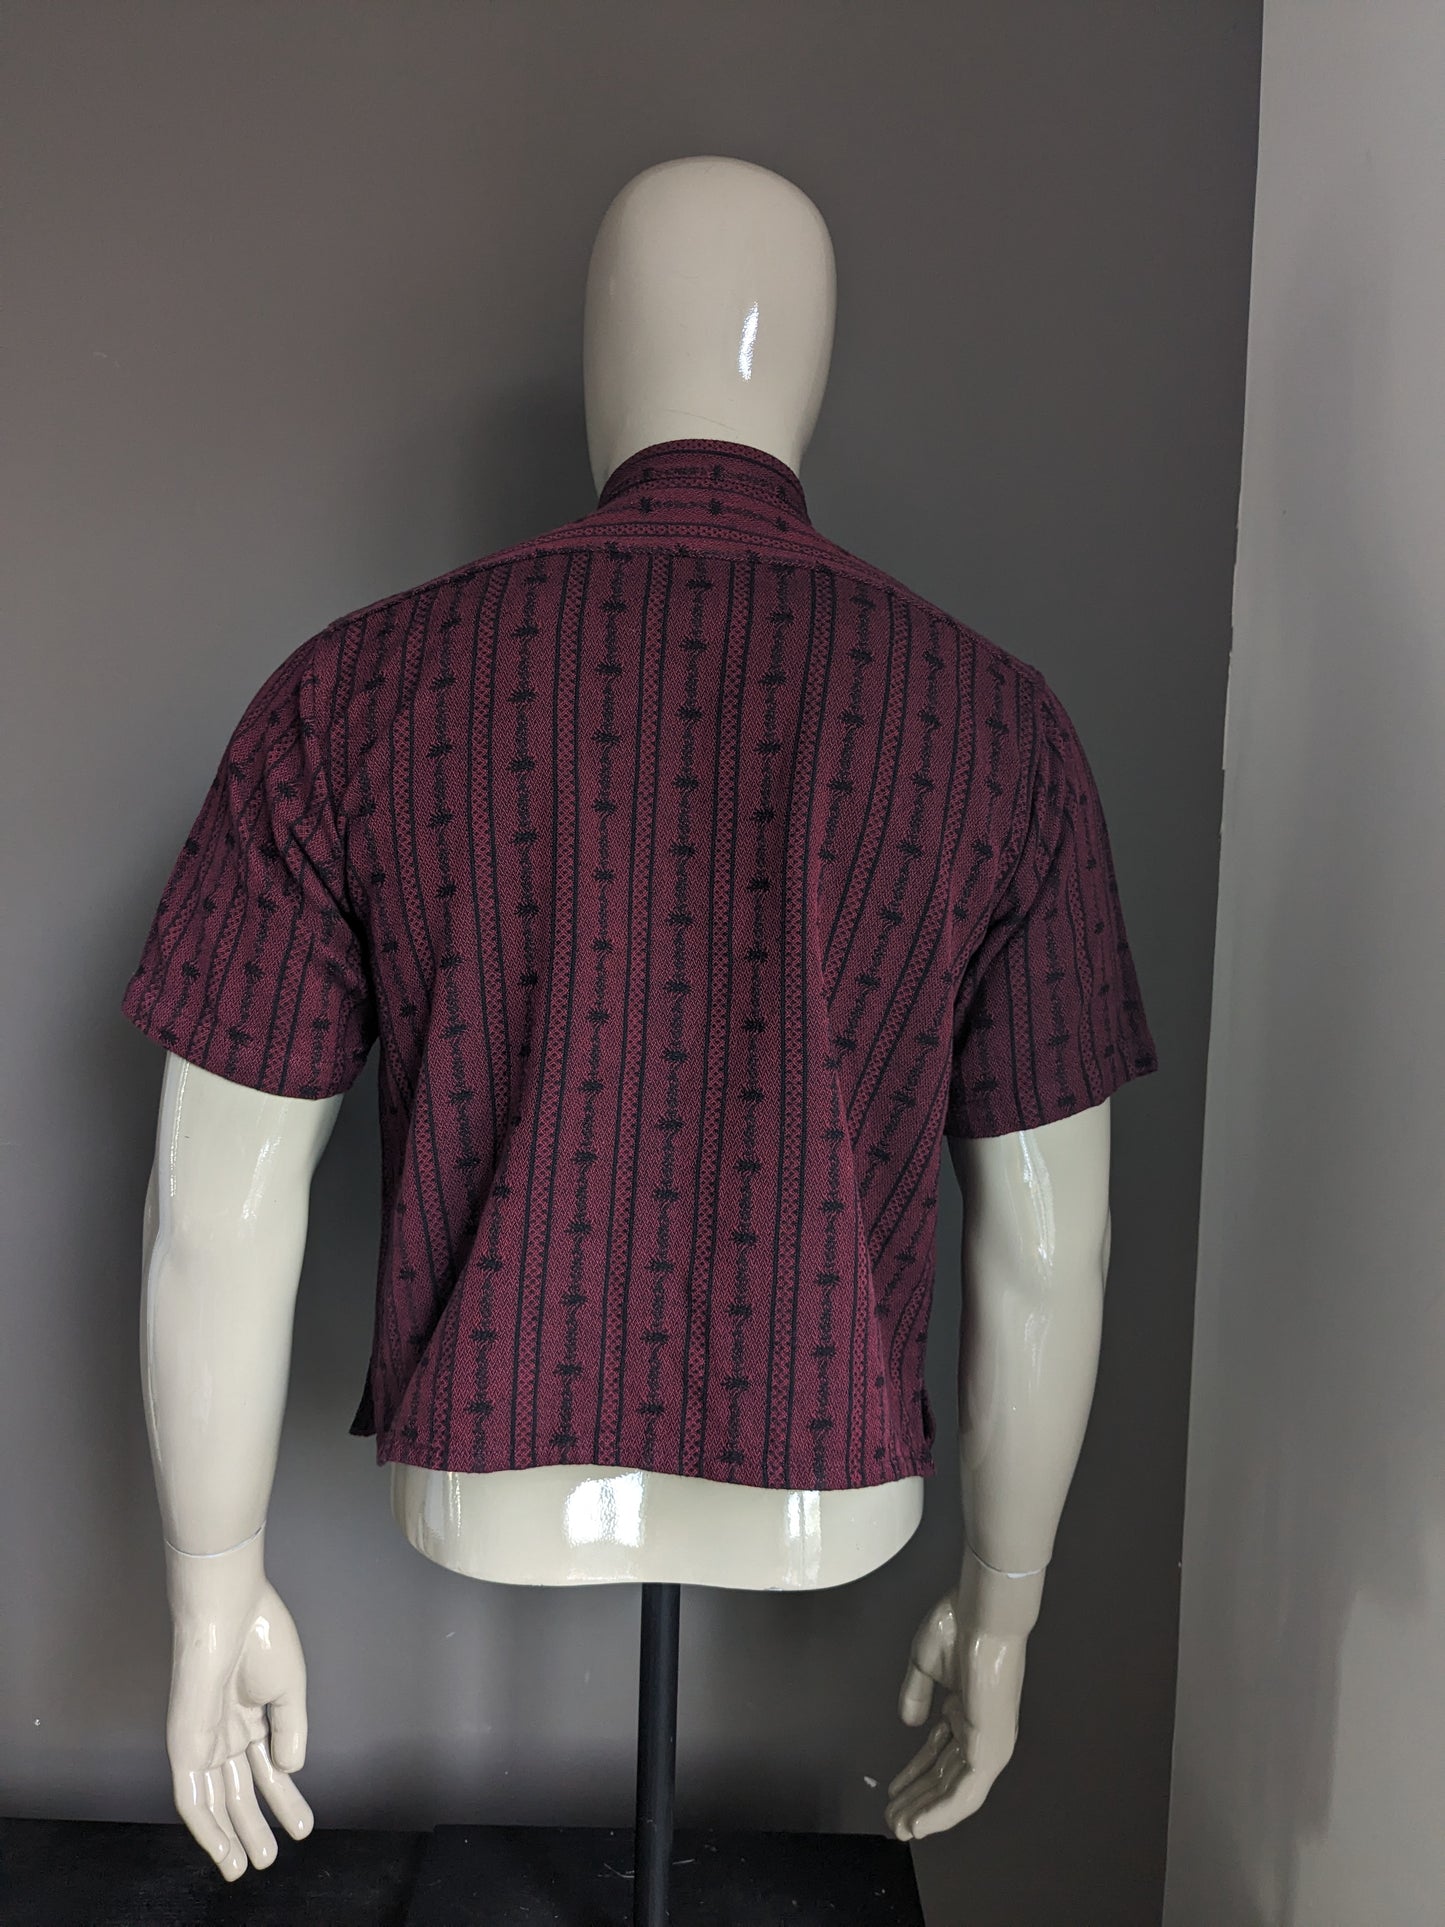 Camisa de atrio vintage con botones y mao / granjeros / cuello vertical. Burdeos de color negro. Tamaño S / M.